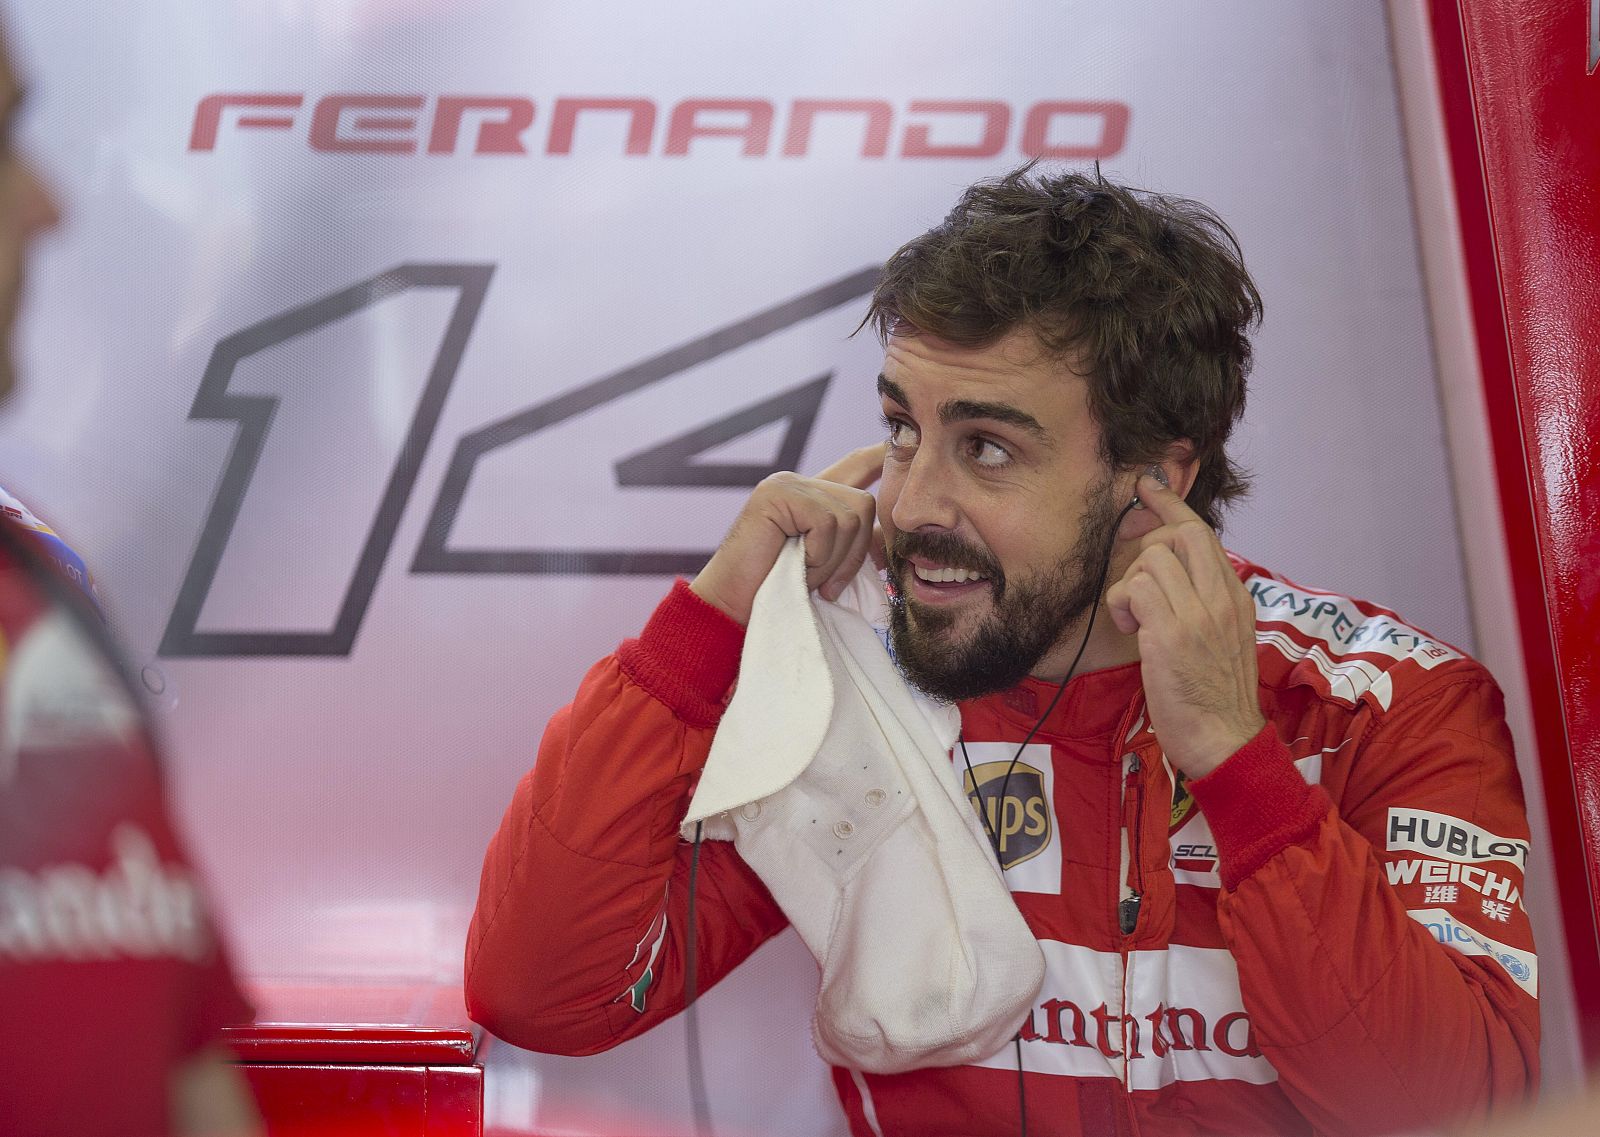 El piloto español Fernando Alonso abandonará la escudería Ferrari a final de temporada.